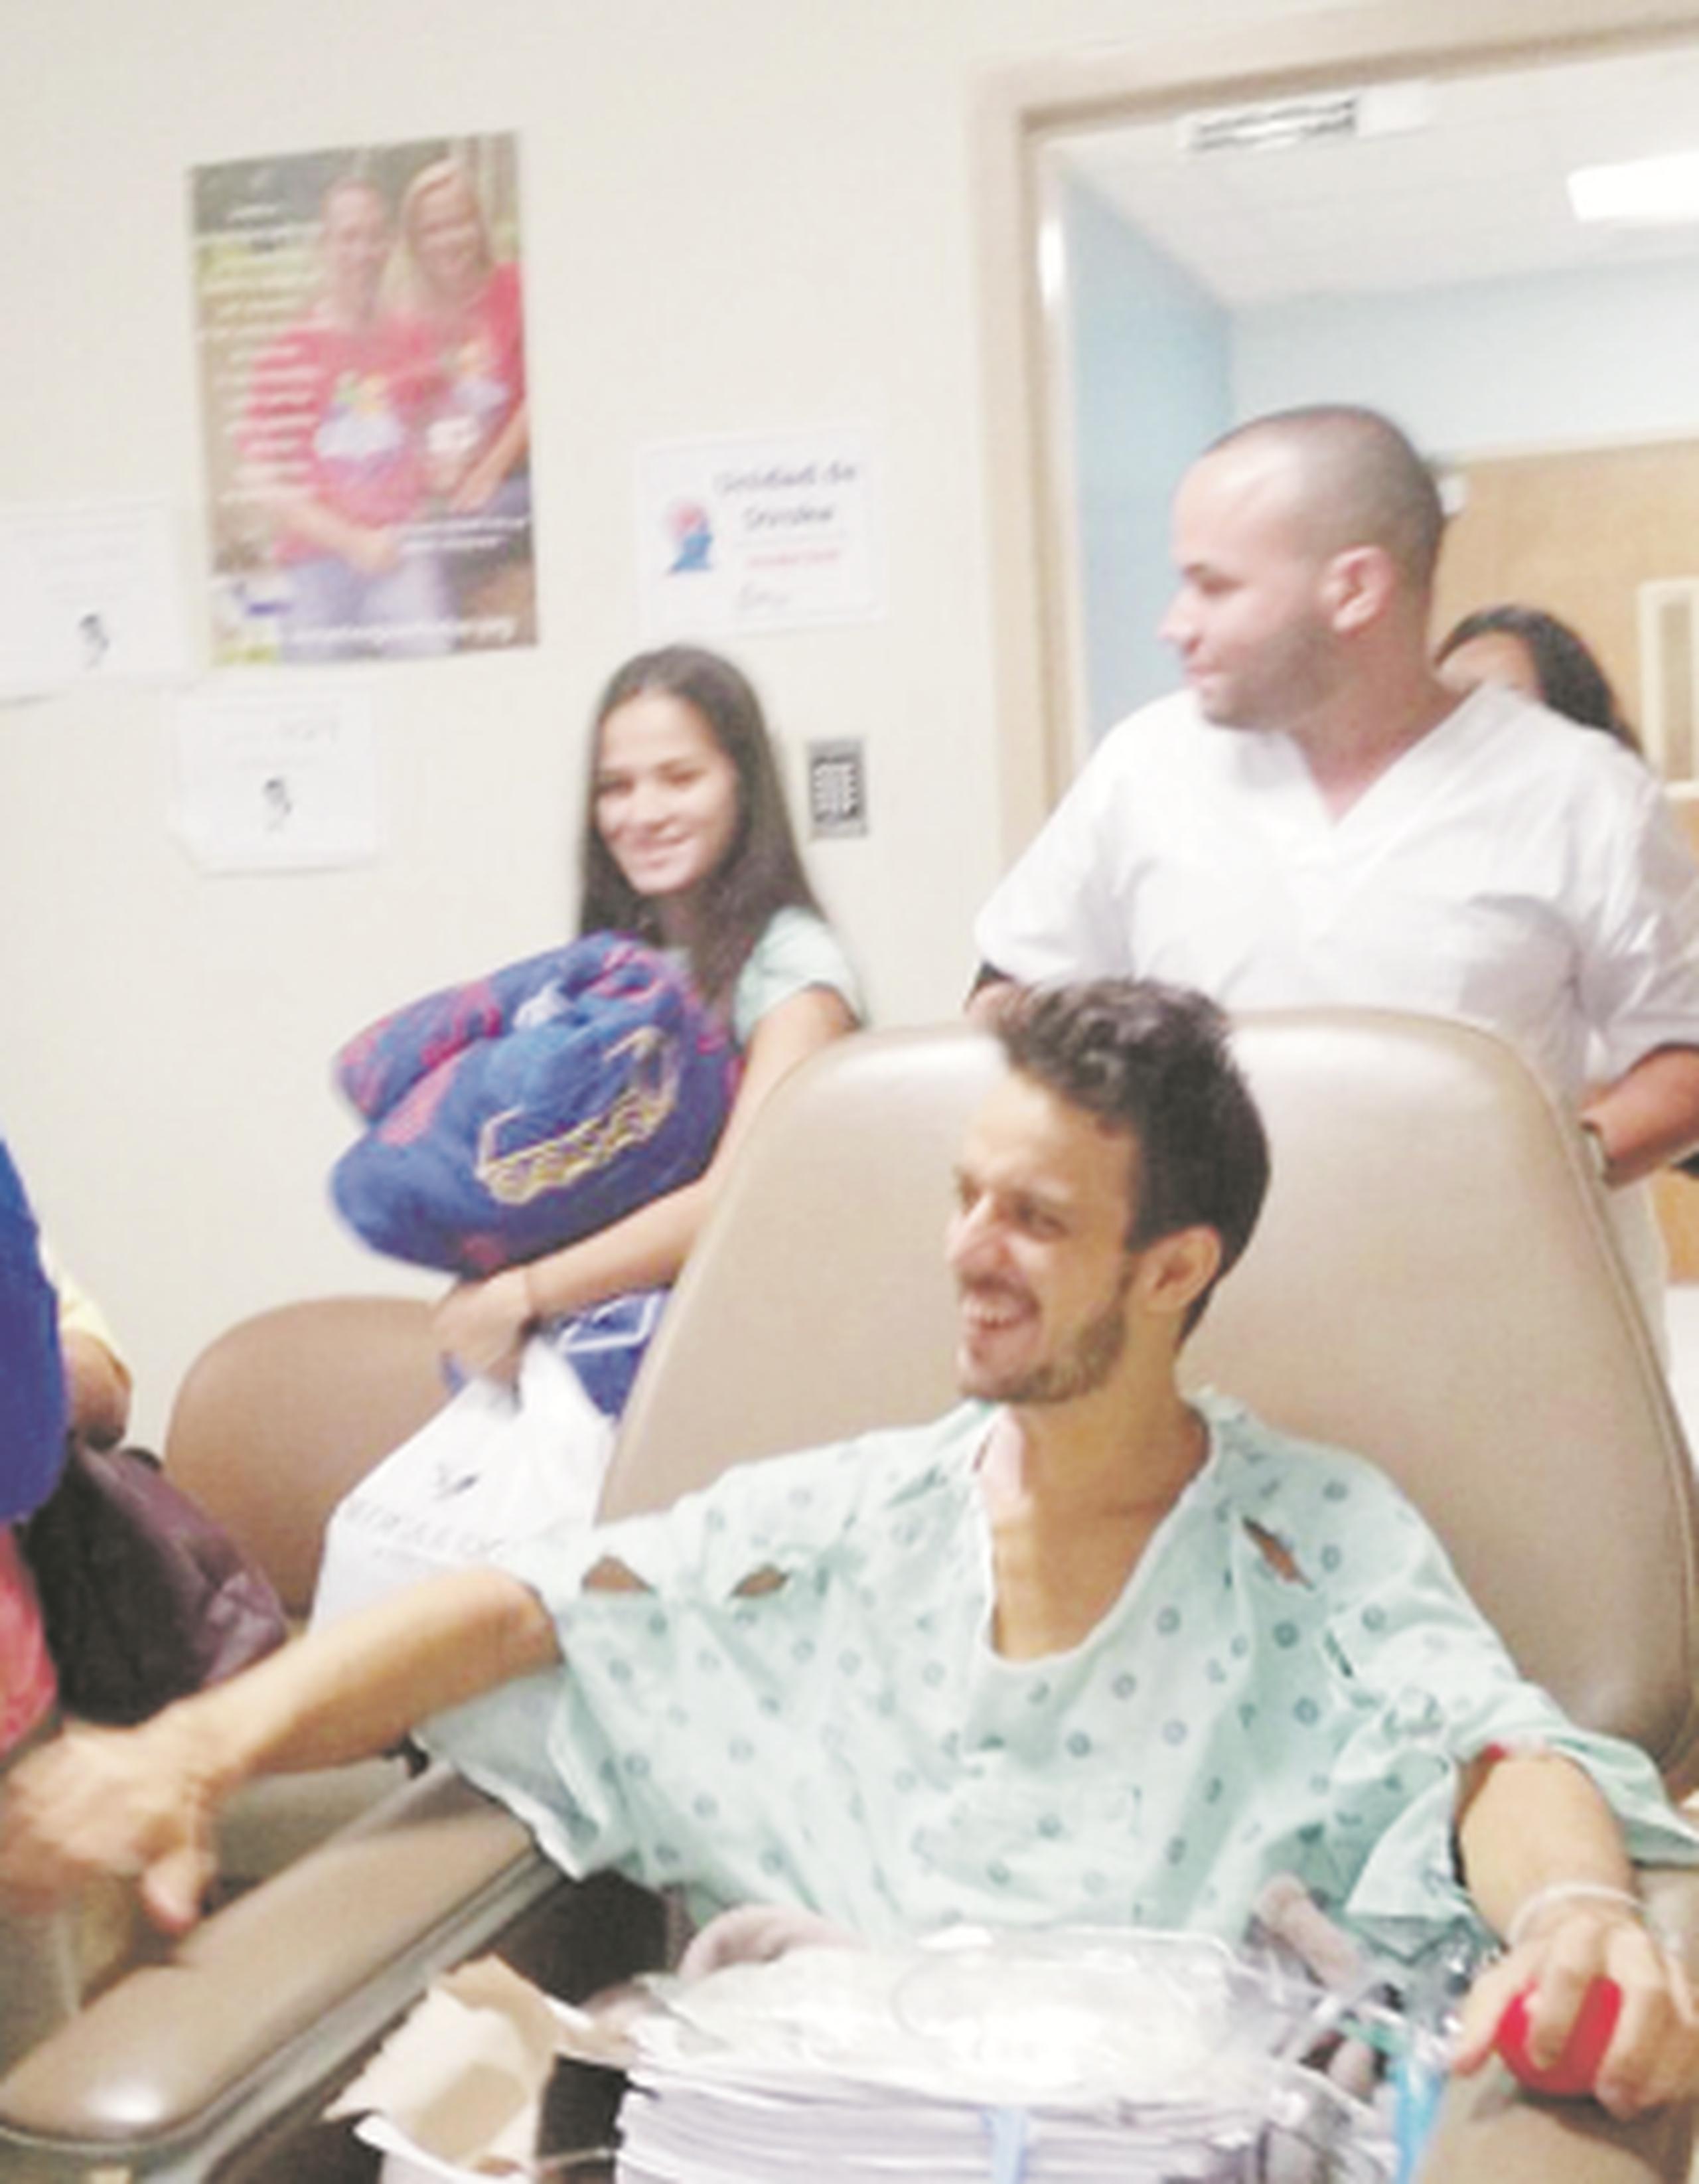 El joven paciente de 26 años, que nunca perdió la conciencia en su proceso de recuperación, celebró el milagro de su vida tras salir del Hospital San Pablo de Bayamón. (Suministrada)